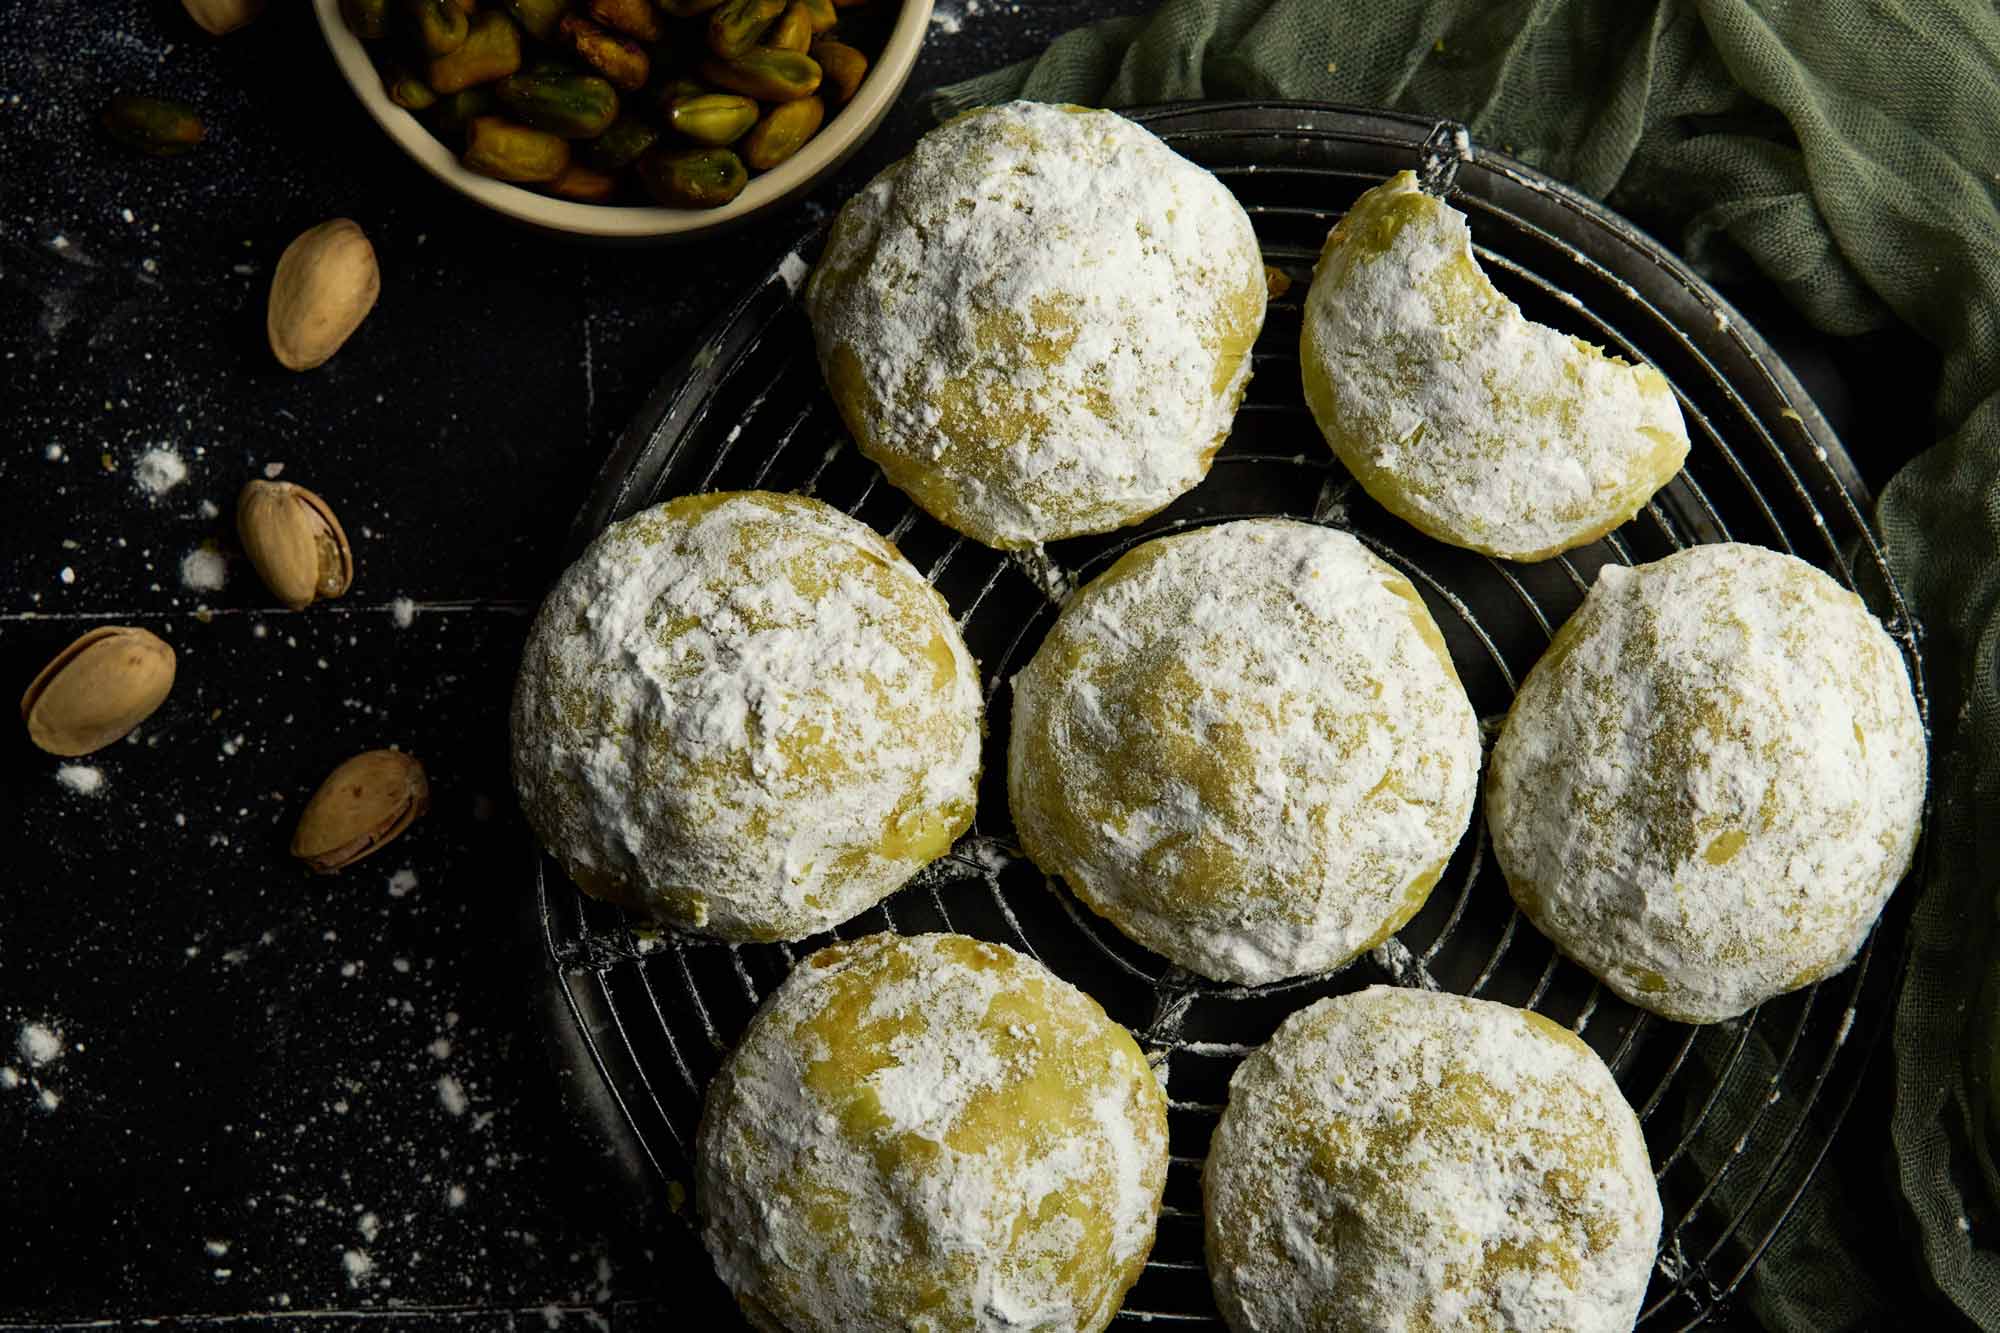 Pistachio Paste Stuffed, Pistachio Snowball Cookies - A Little Spoon